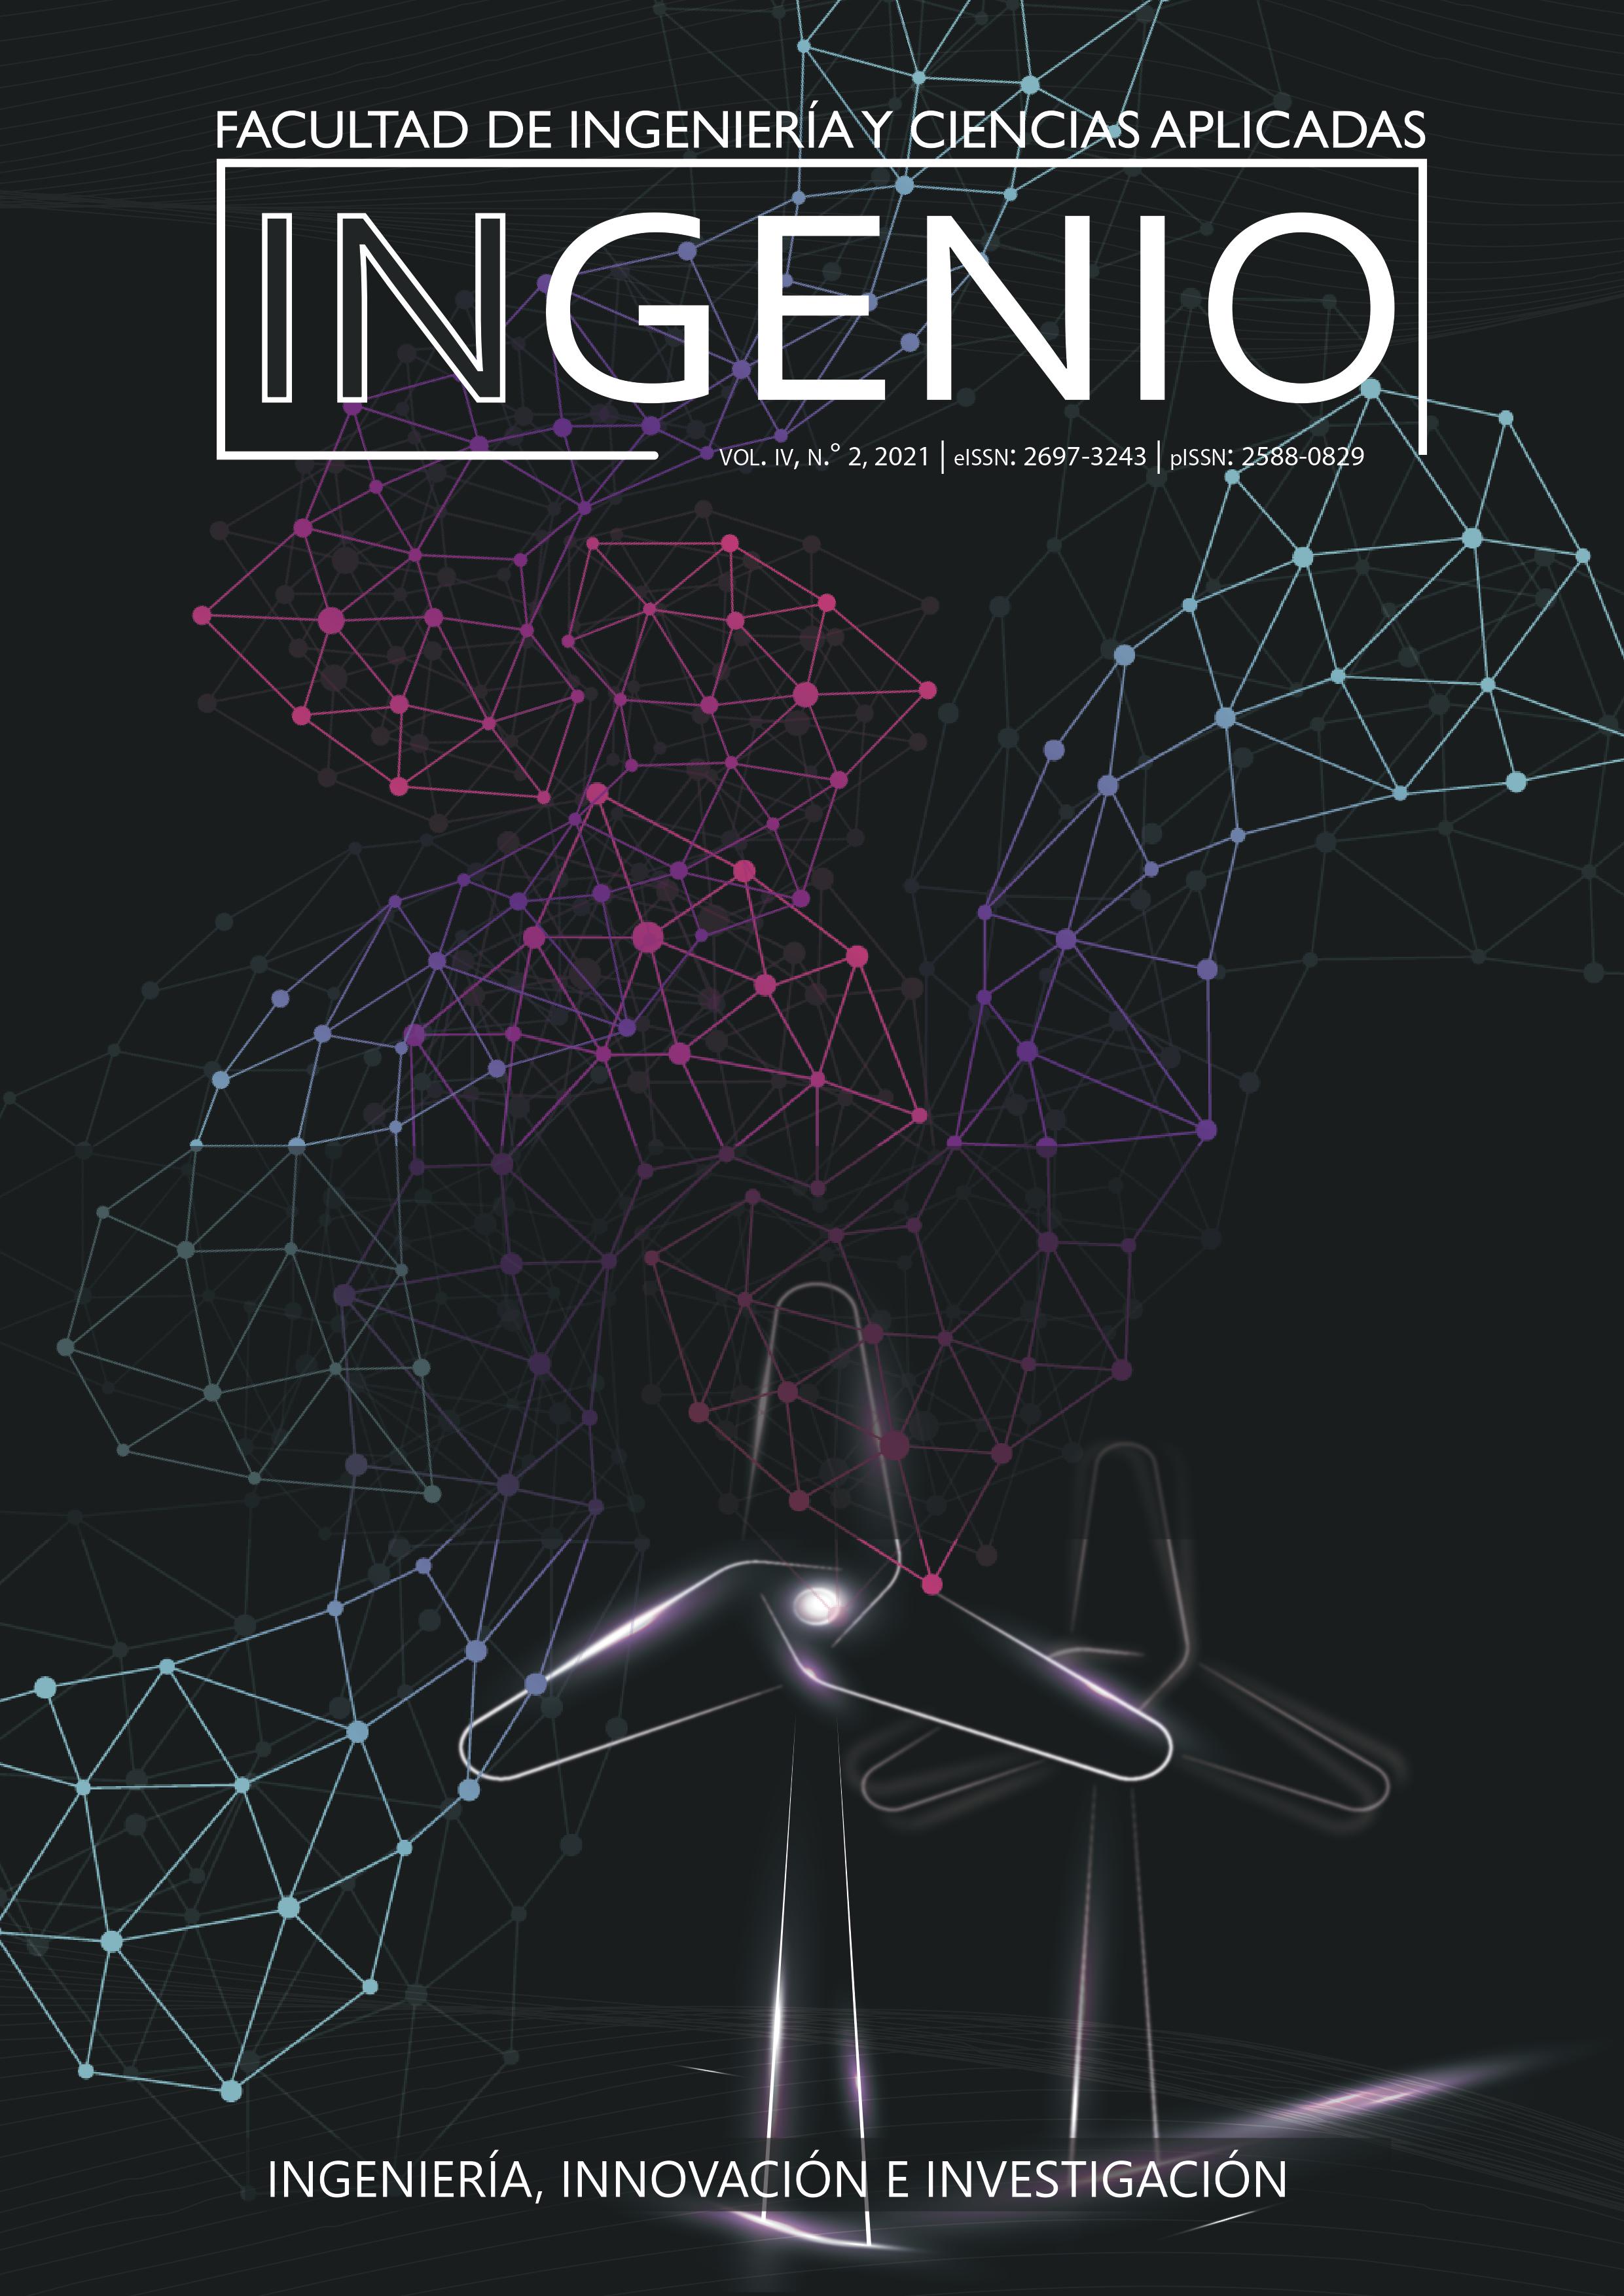 					Ver Vol. 4 Núm. 2 (2021): Revista Ingenio, Facultad de Ingeniería y Ciencias Aplicadas
				